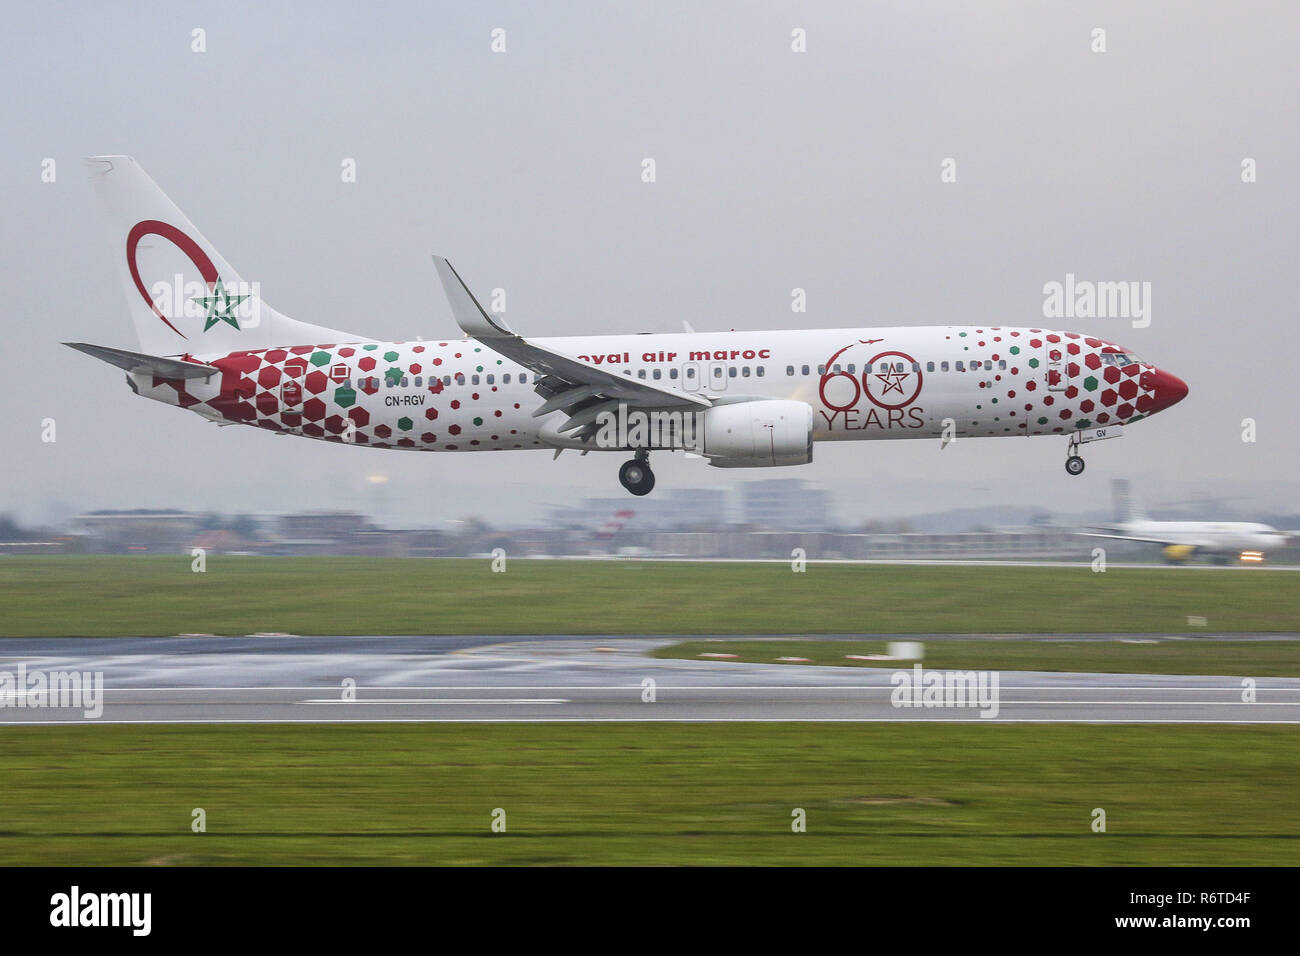 1 décembre 2017 - Bruxelles, Belgique - la Royal Air Maroc Boeing 737-800  ou RAM est perçu à l'atterrissage à l'Aéroport International de Bruxelles  en Belgique, connu sous le nom de l'aéroport